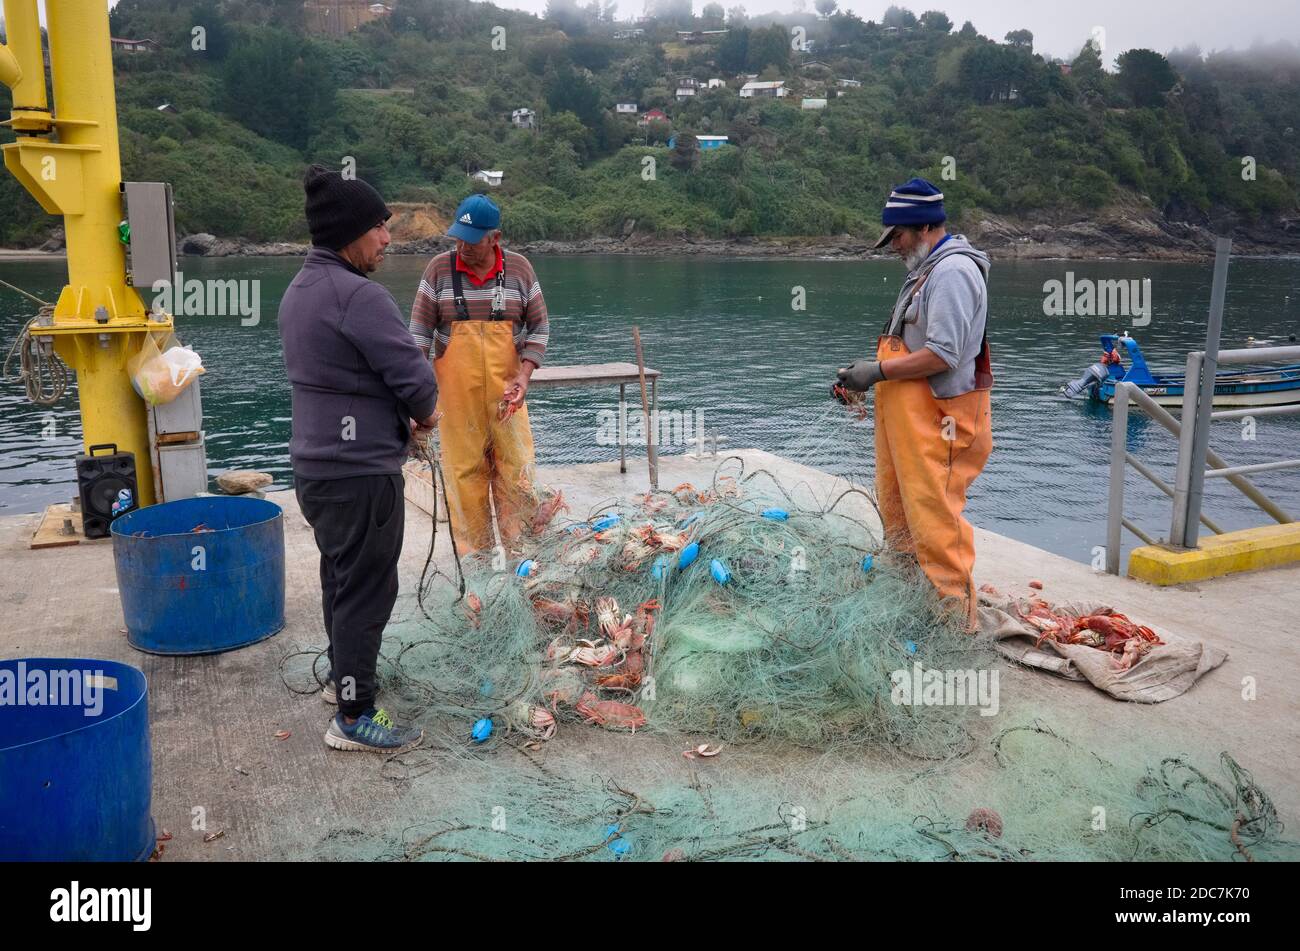 Bahia Mansa, provincia de Osorno, Chile - Febrero, 2020: Tres pescadores sacan cangrejos de la red de pesca en el muelle de pescadores en el pequeño pueblo pesquero Foto de stock